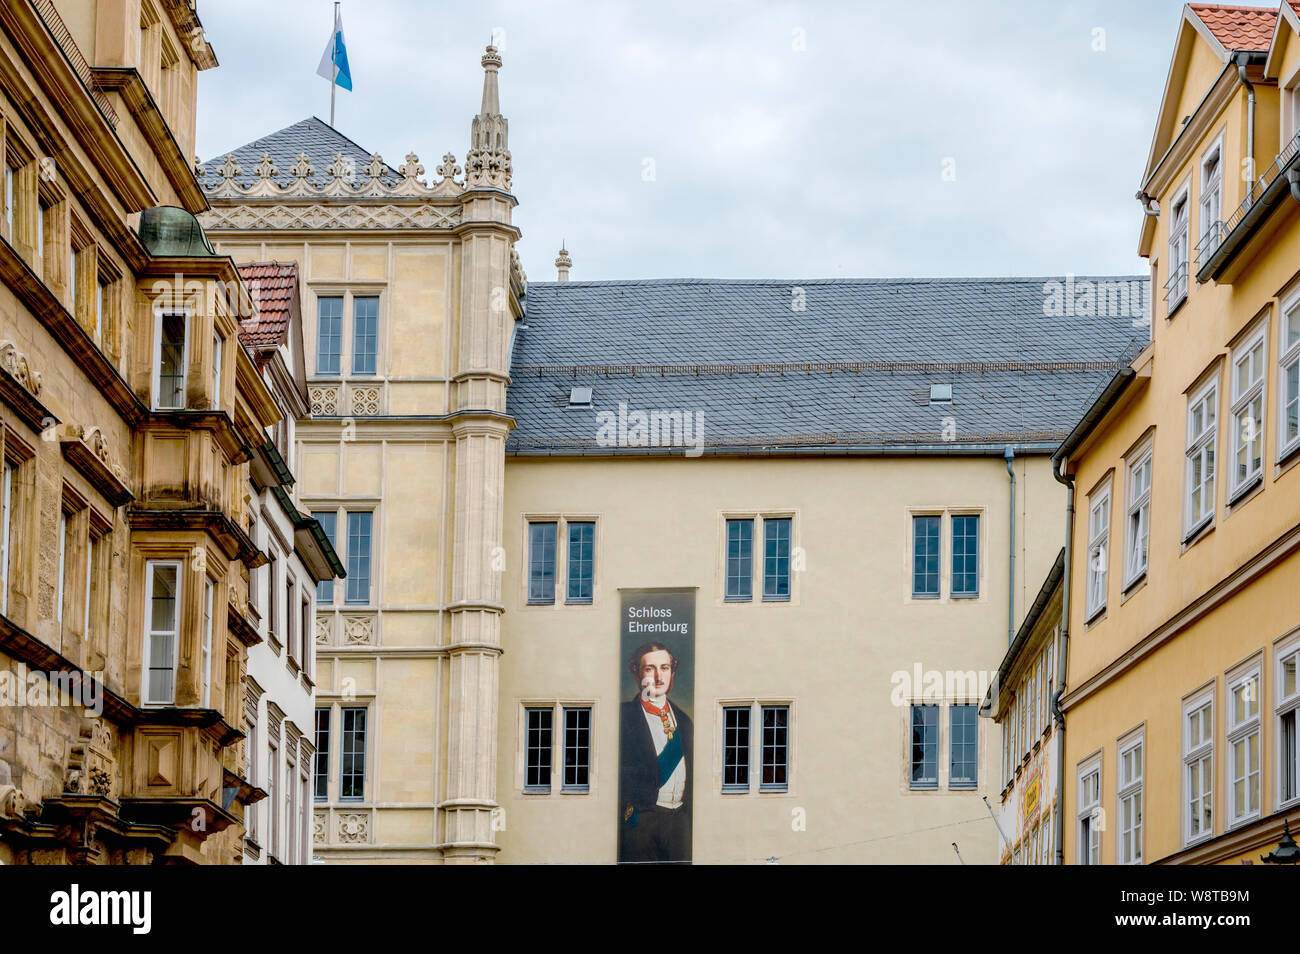 Coburg (Franken, Deutschland): Schloss Ehrenburg (Rückseite) mit Plakat zum Geburtstag von Prince Albert; Ehrenburg Palace with picture of Prince Albe Stock Photo